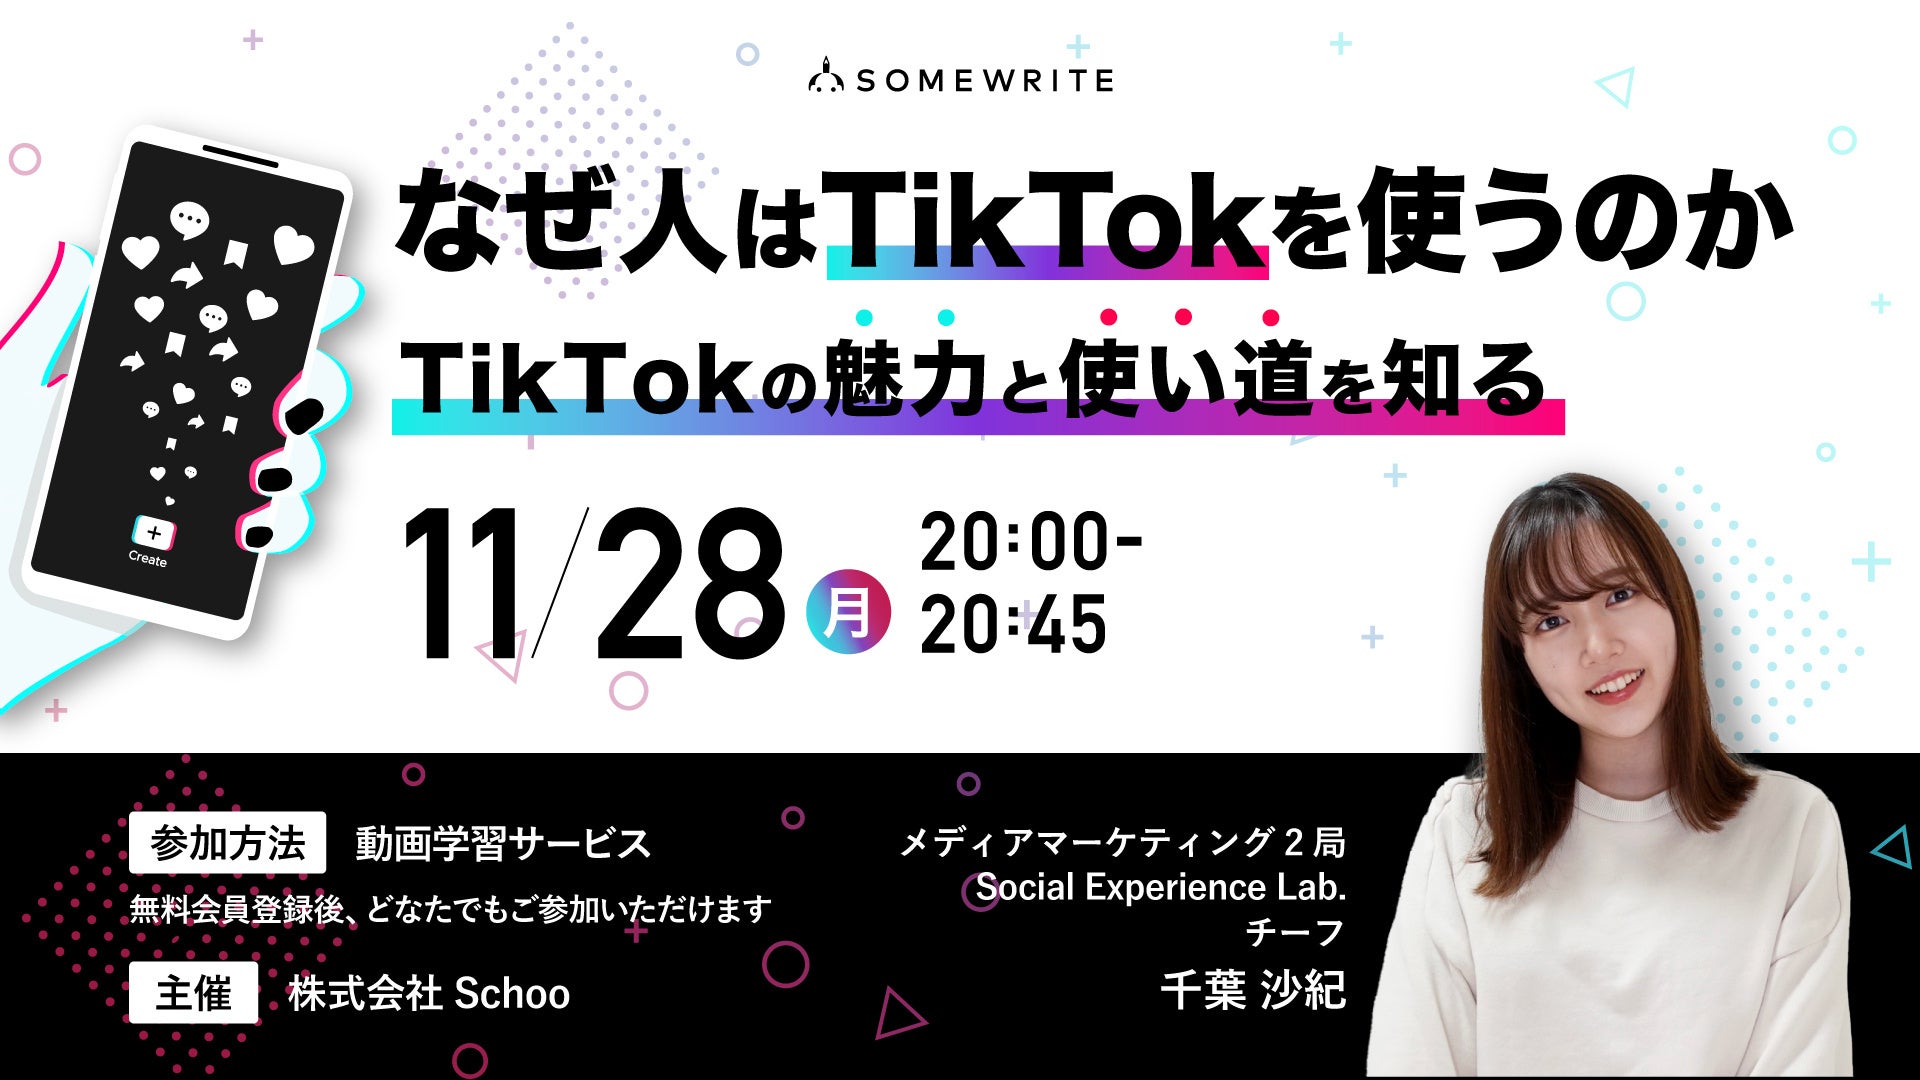 オンライン学習サービスを提供するSchooにサムライト所属のTikTokクリエイターが講師として登壇(11月28日放送)のサブ画像1